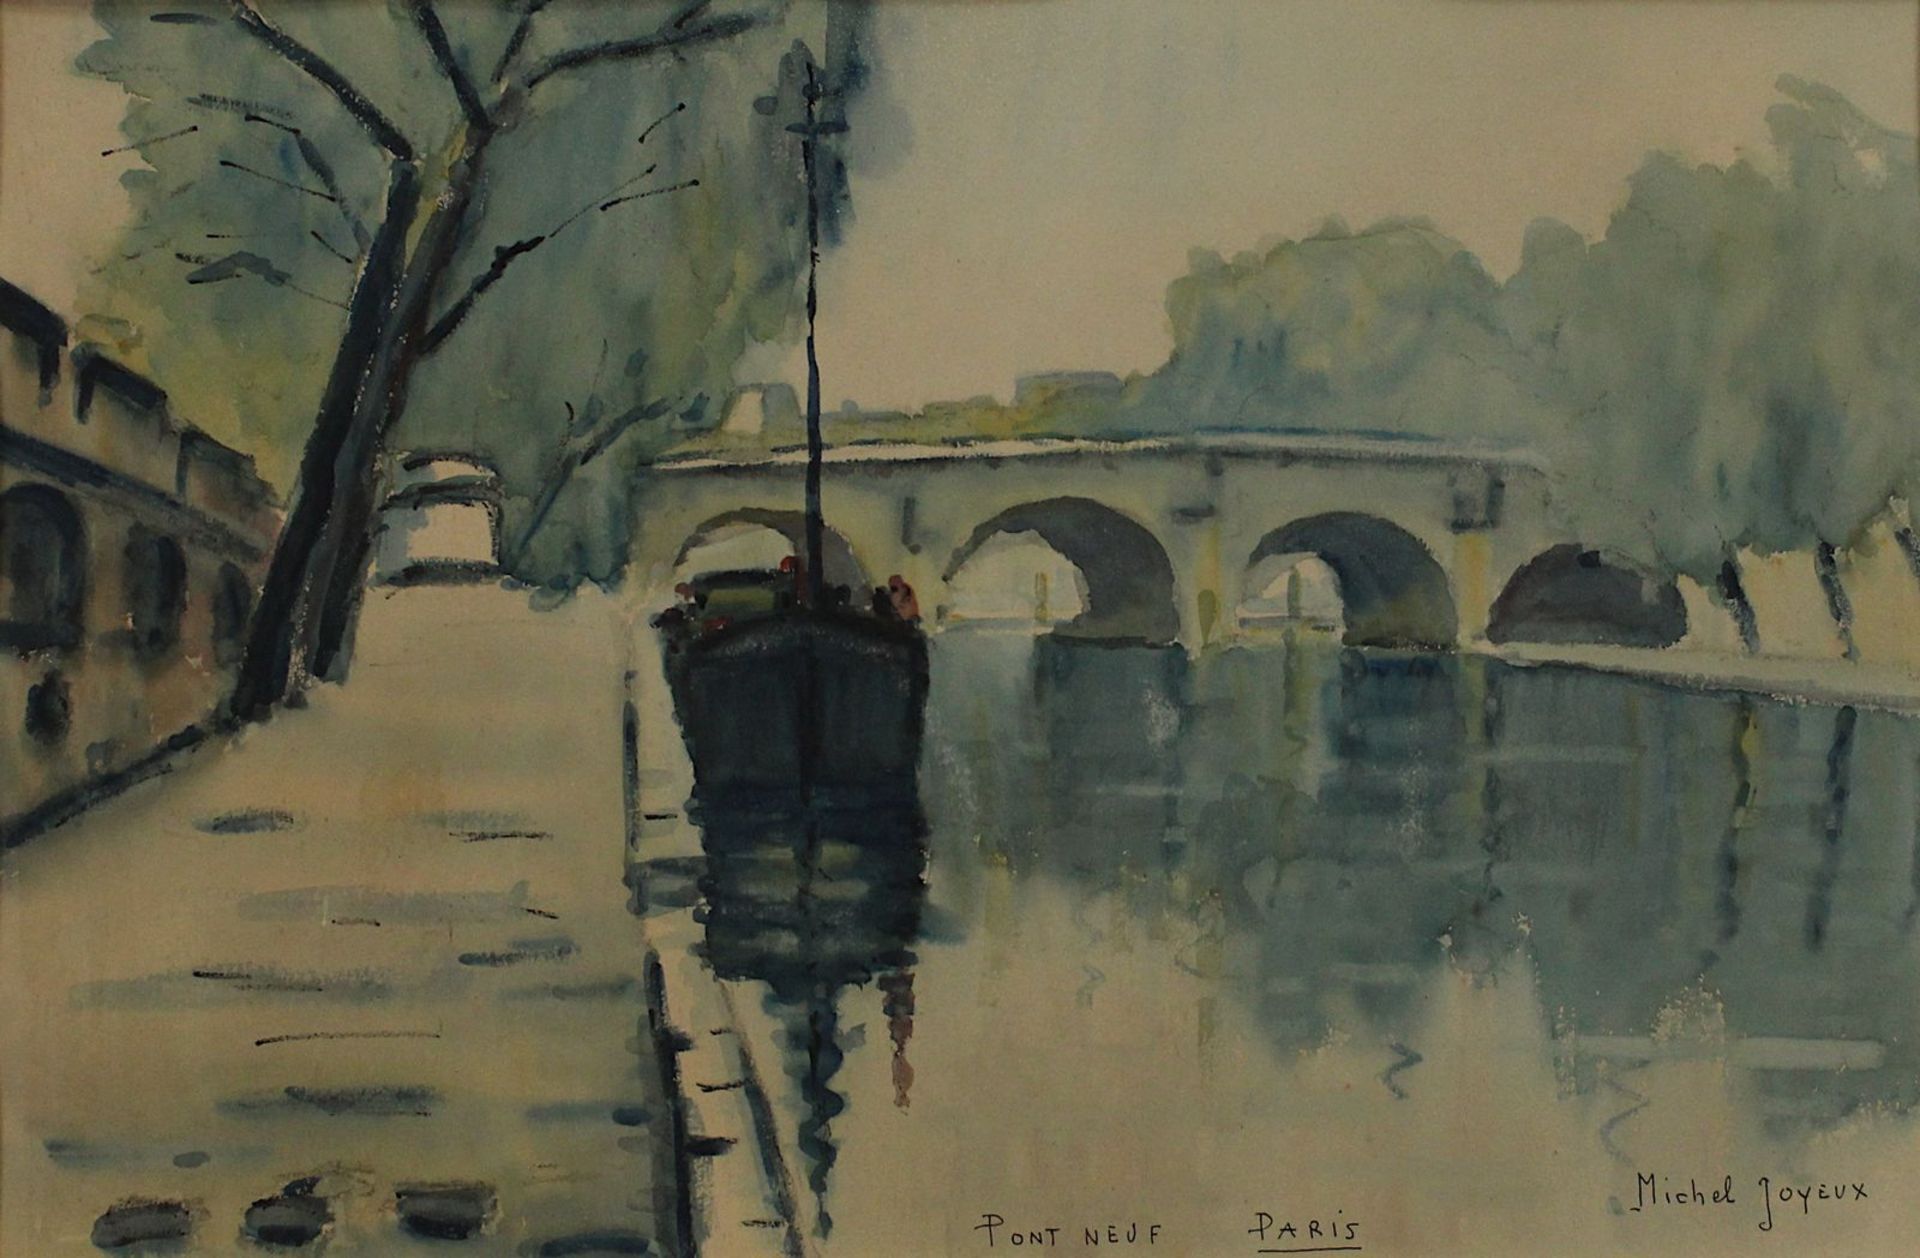 Joyeux, Michel, französischer Künstler 20. Jh., "Pont Neuf Paris", Aquarell, re. unt. sign., am unt. - Bild 2 aus 2